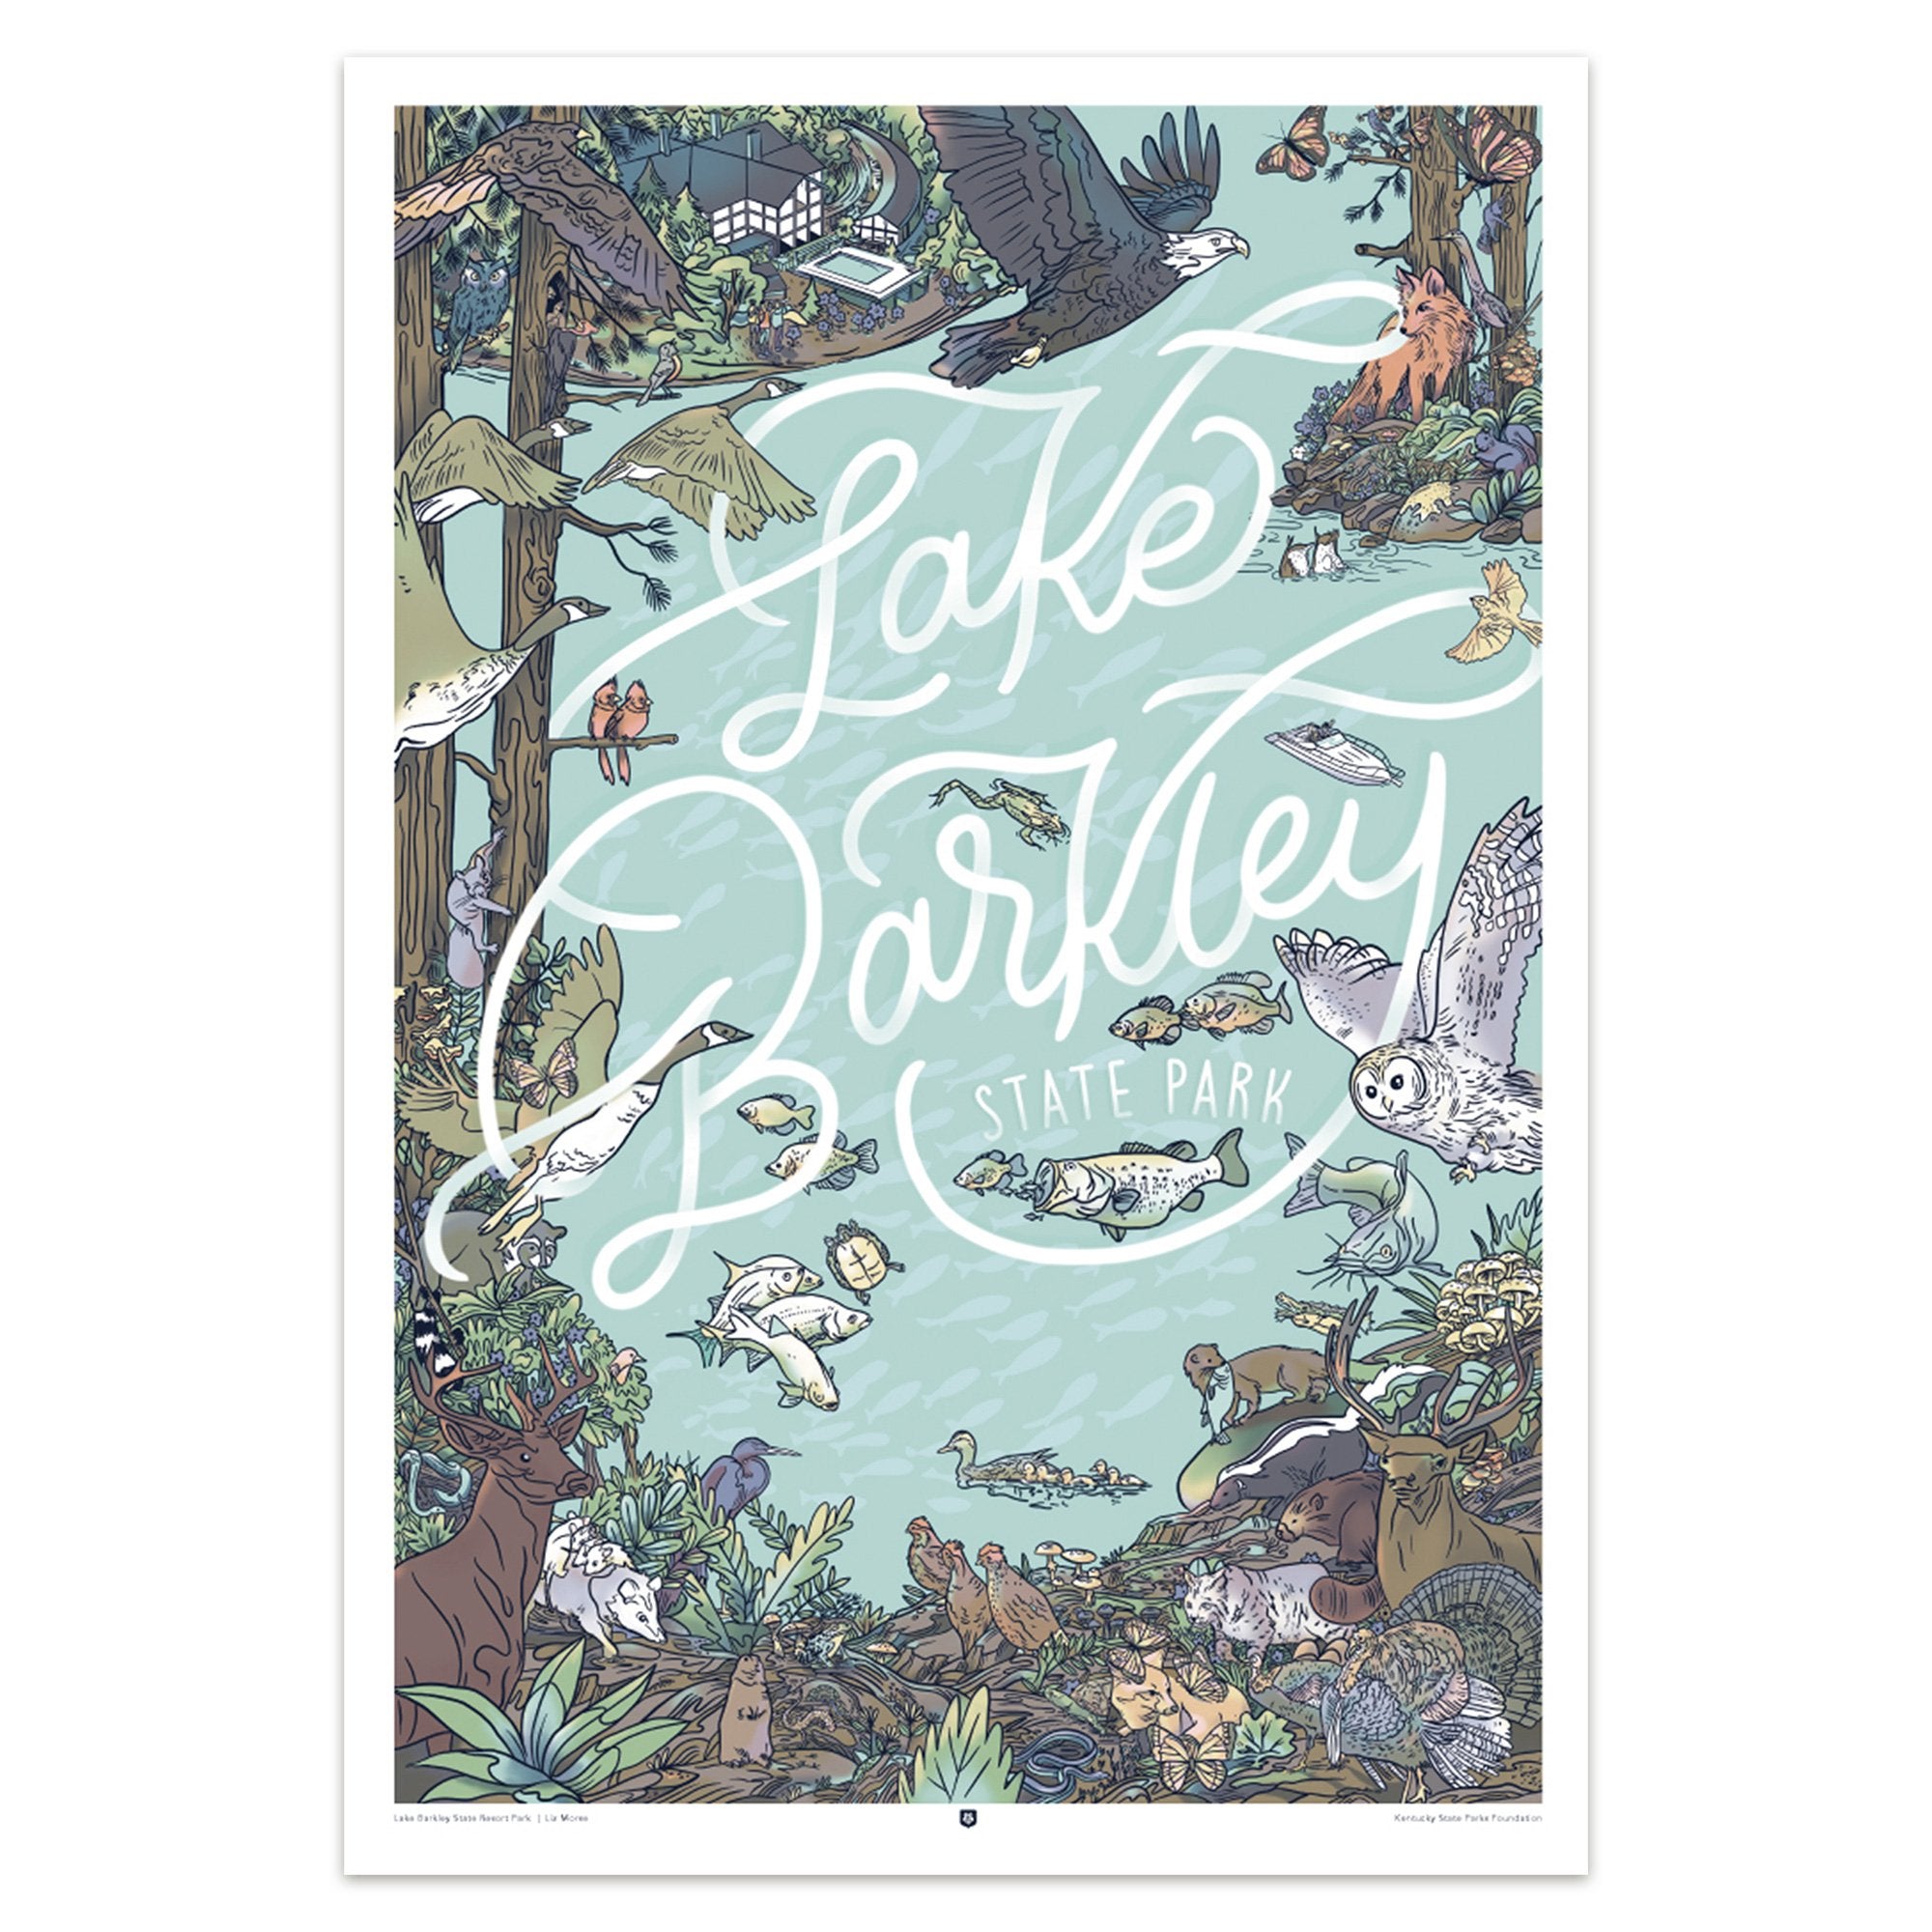 Lake Barkley State Park Poster by Liz Morse